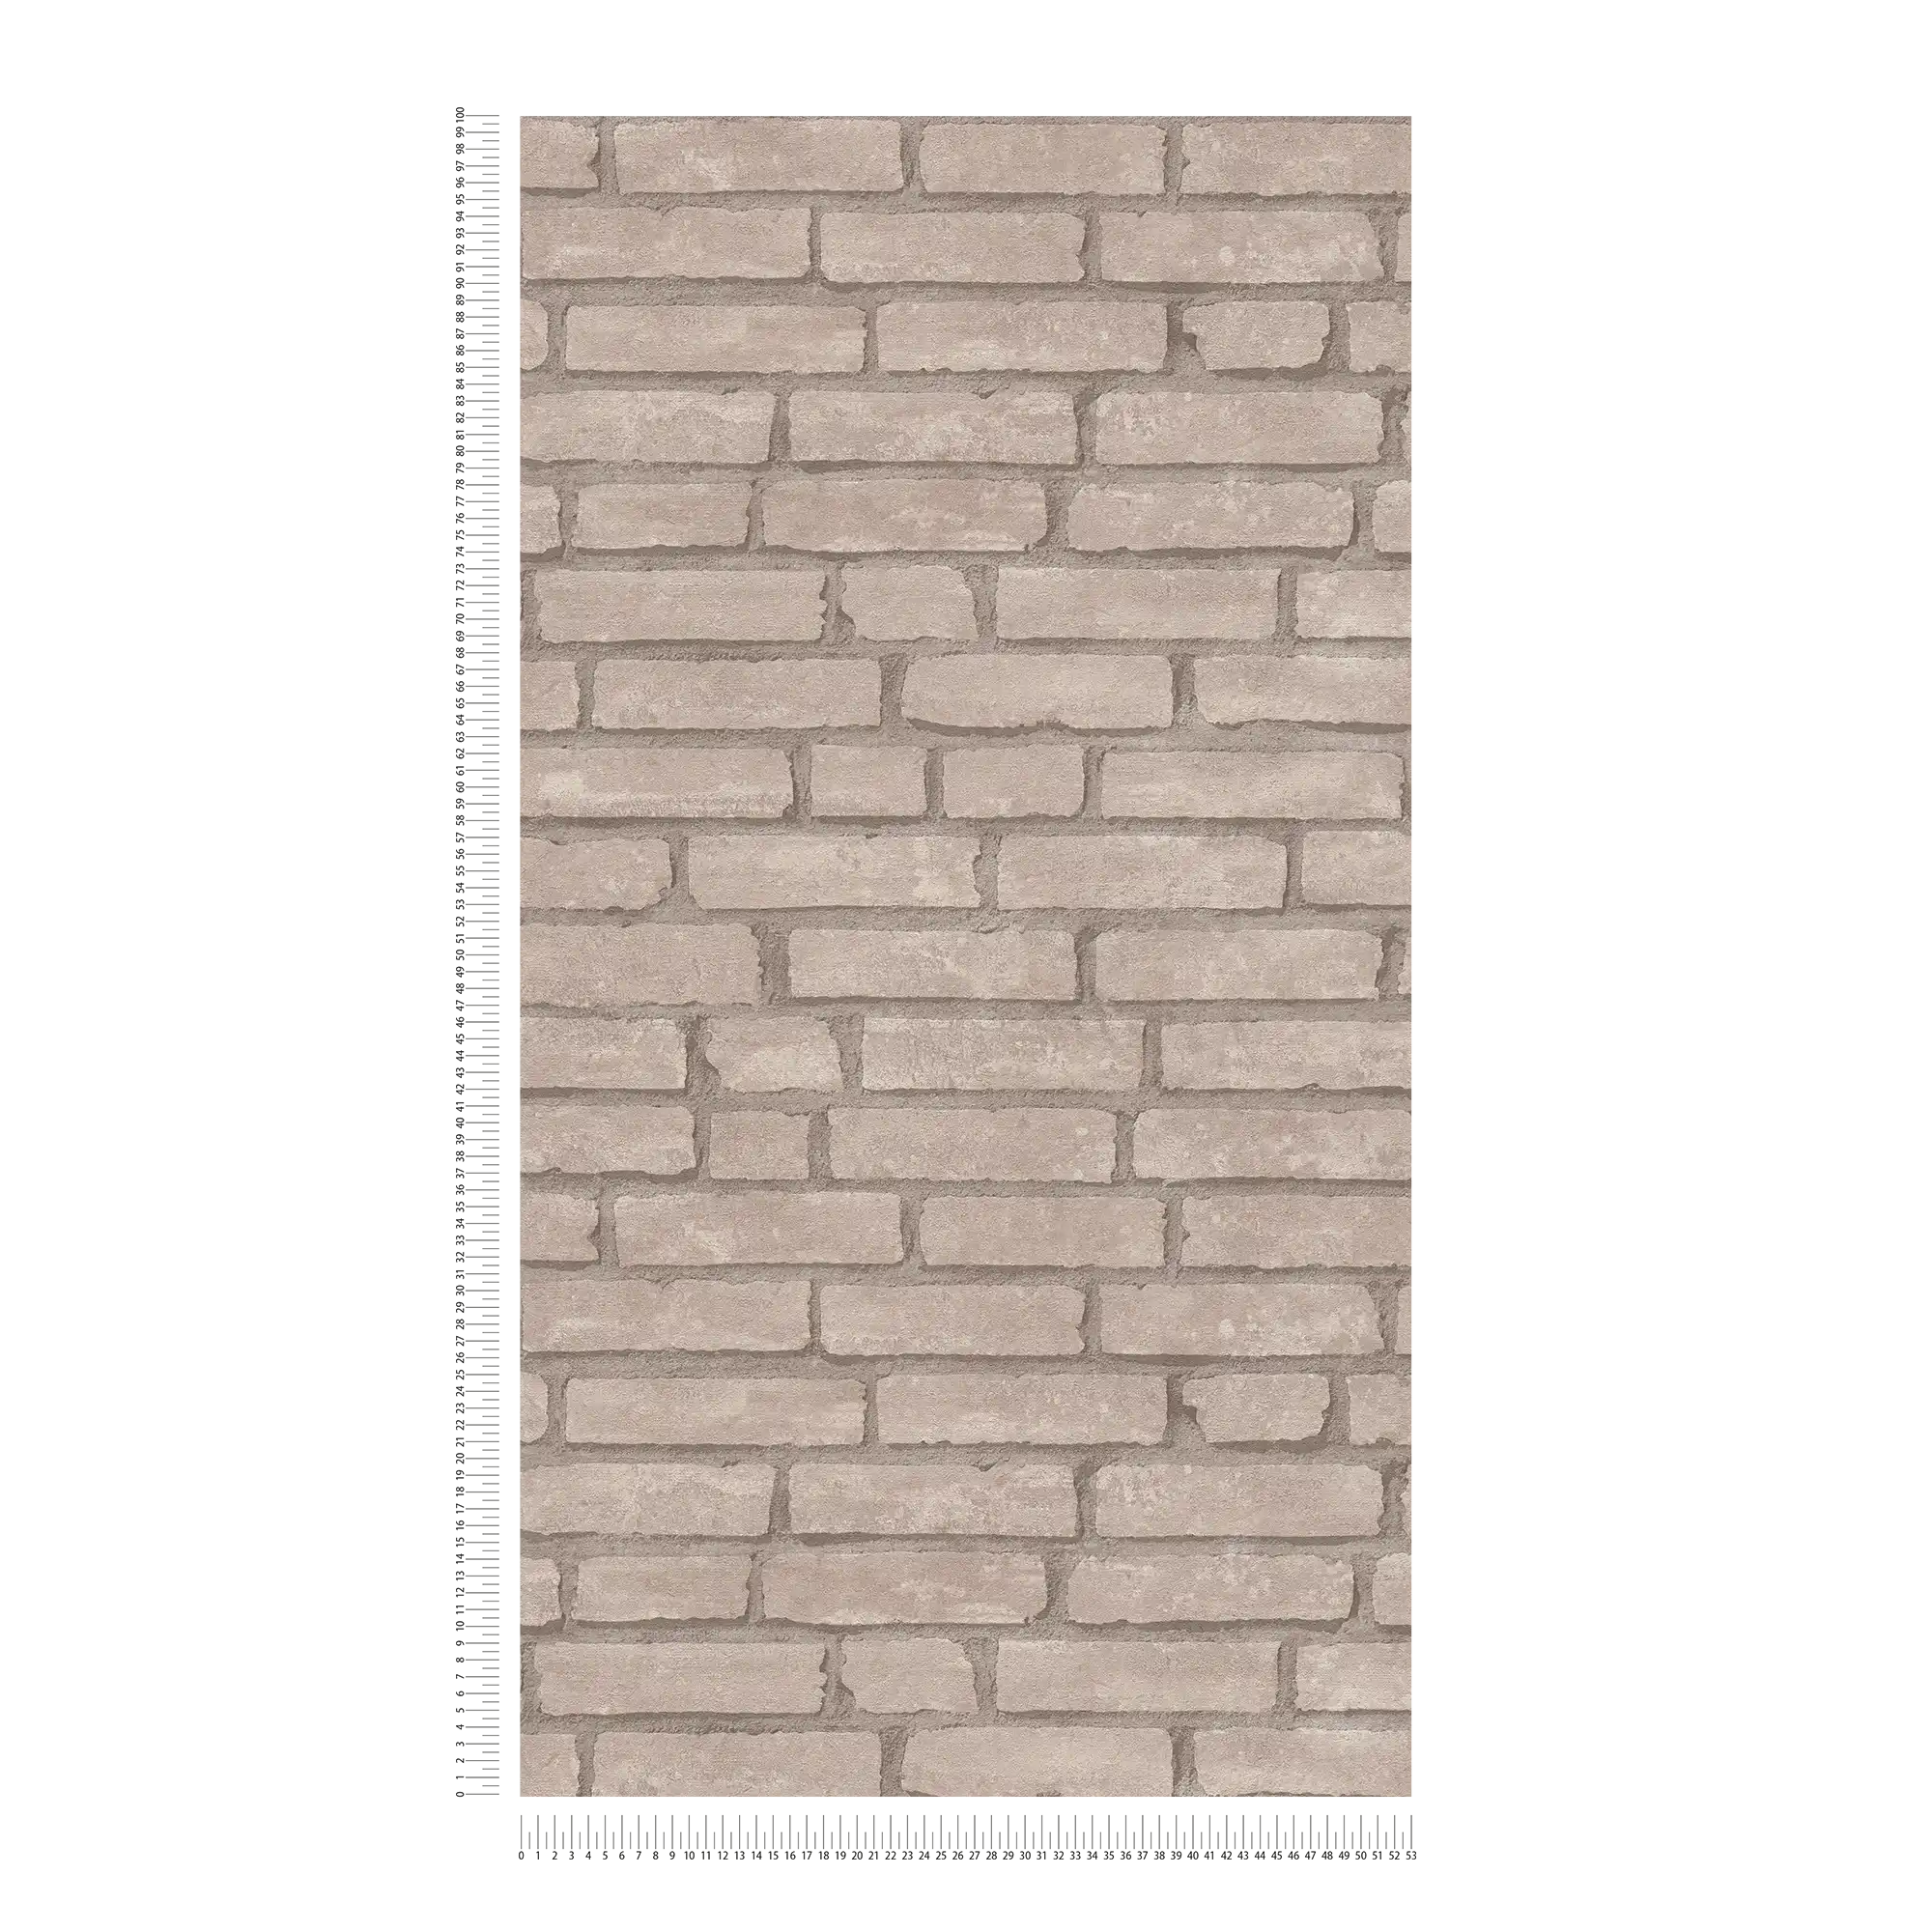             Carta da parati in pietra muratura di mattoni marrone - grigio, beige
        